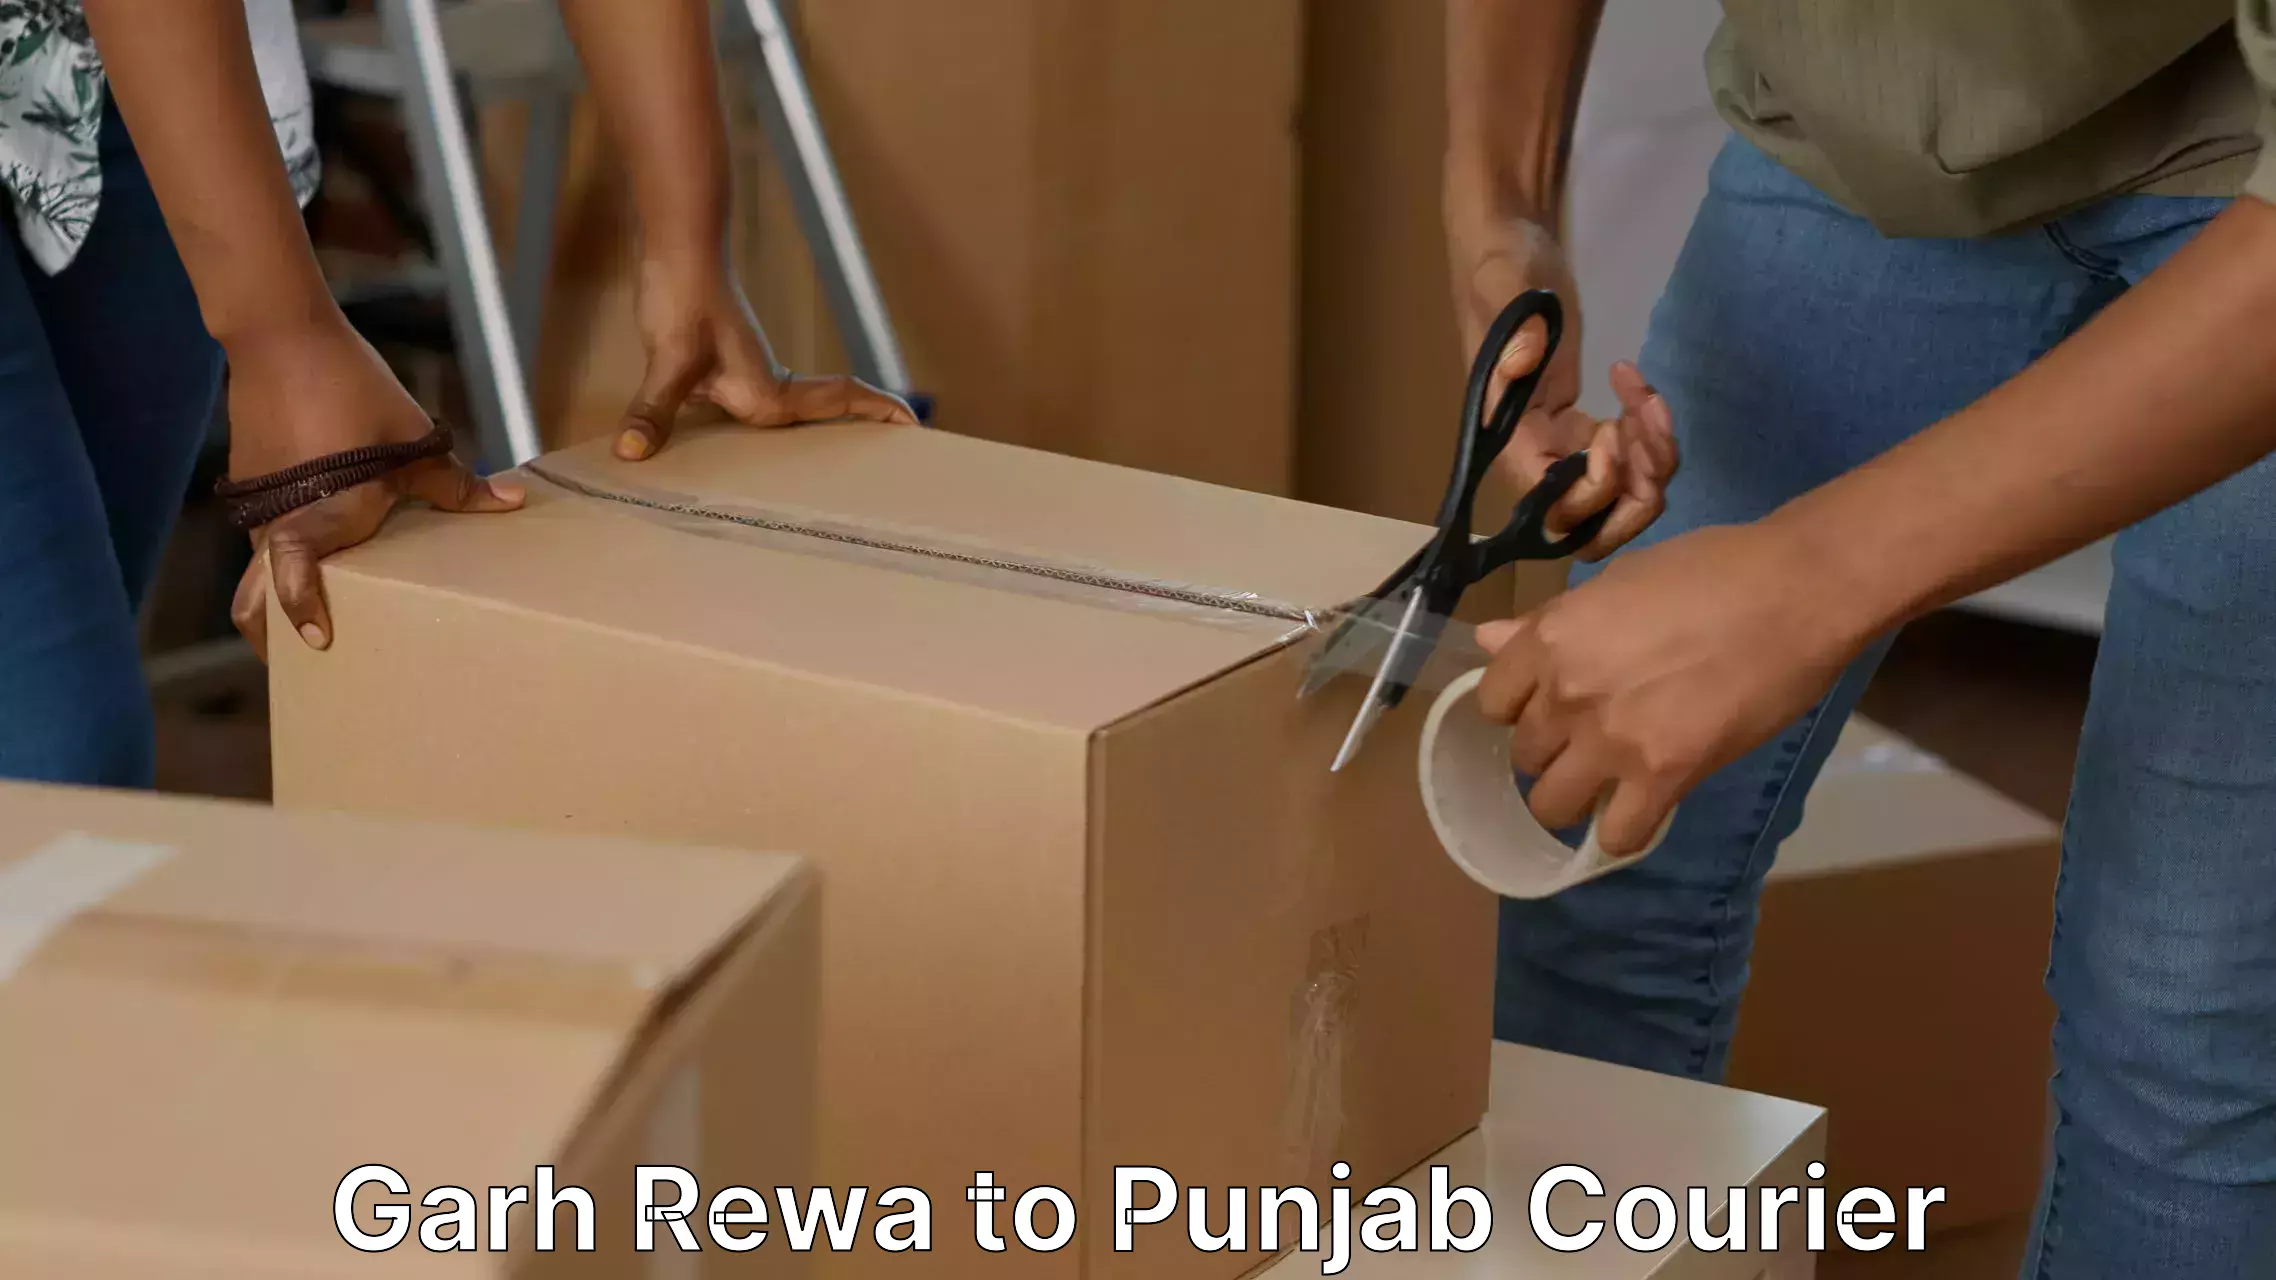 Moving and packing experts Garh Rewa to Punjab